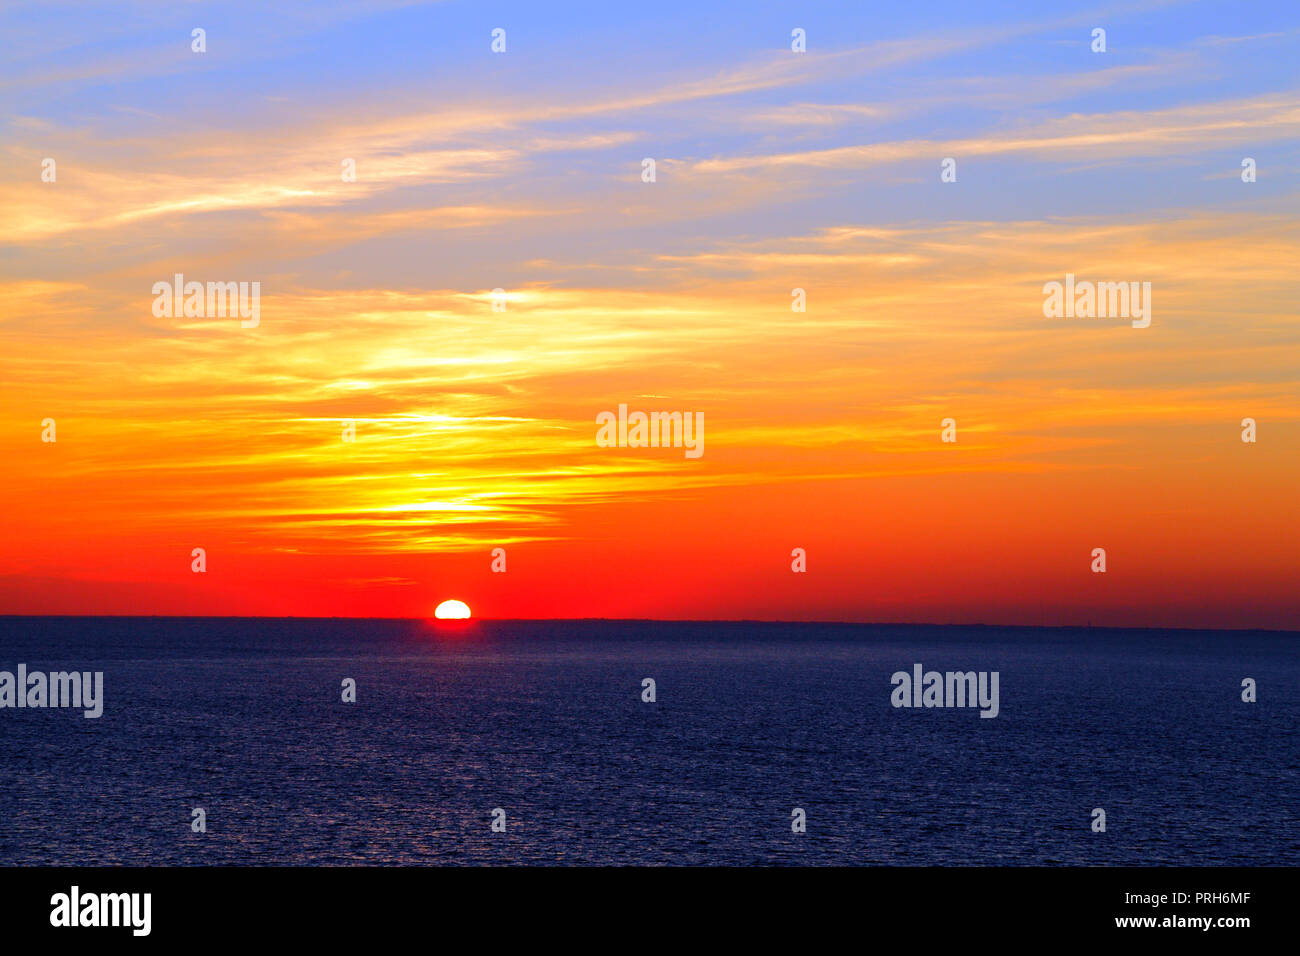 Sonnenuntergang, die Waschen, von Hunstanton, Norfolk, UK, Herbst Solstice, Meer, Himmel, Sonne Stockfoto